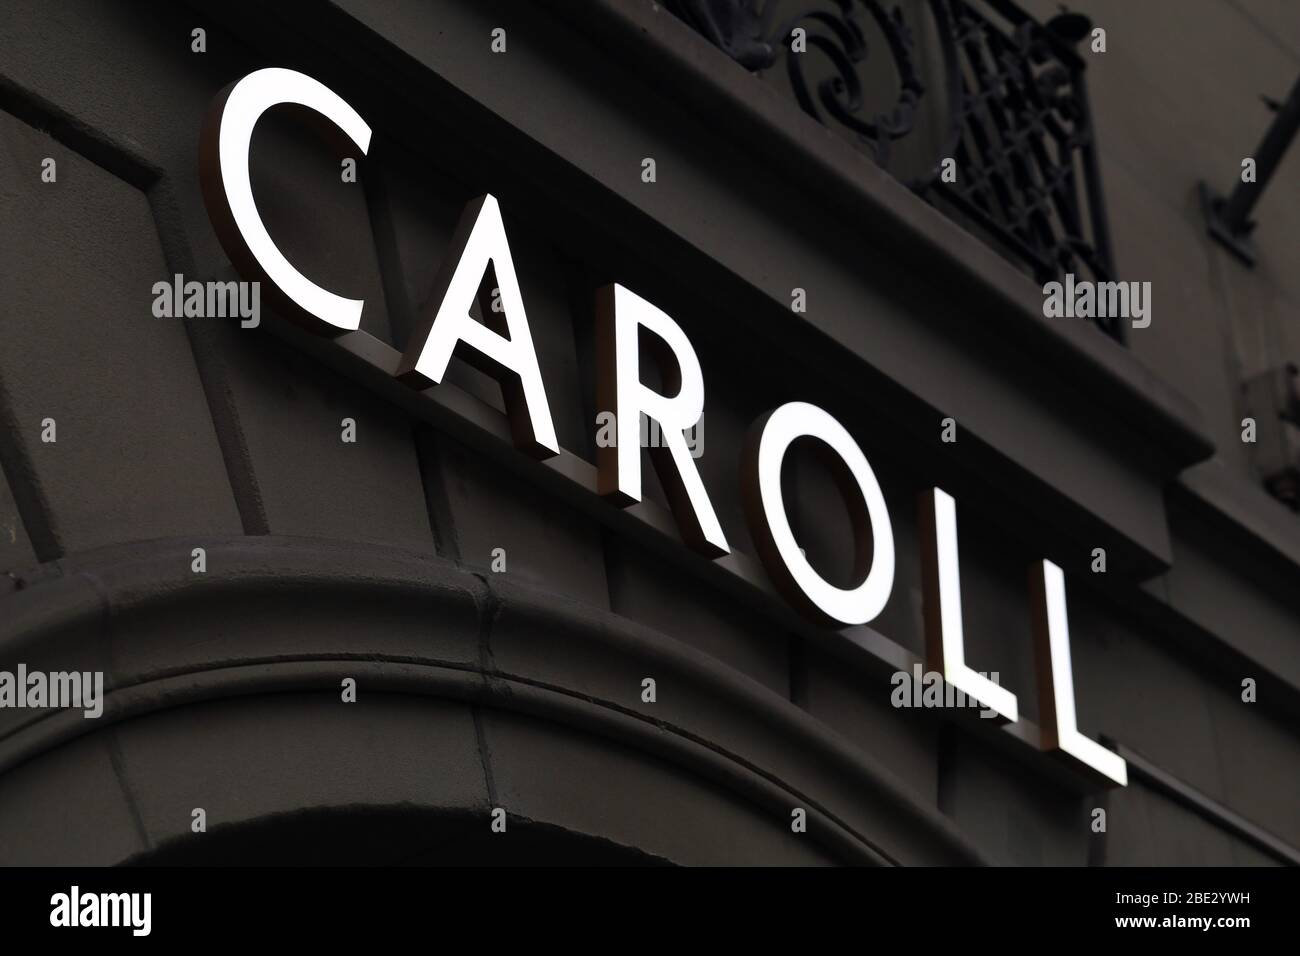 Logo di Caroll su una parete di un vecchio edificio situato nel centro di Berna, Svizzera, marzo 2020. Il logo è illuminato. Caroll è un marchio di moda. Foto Stock